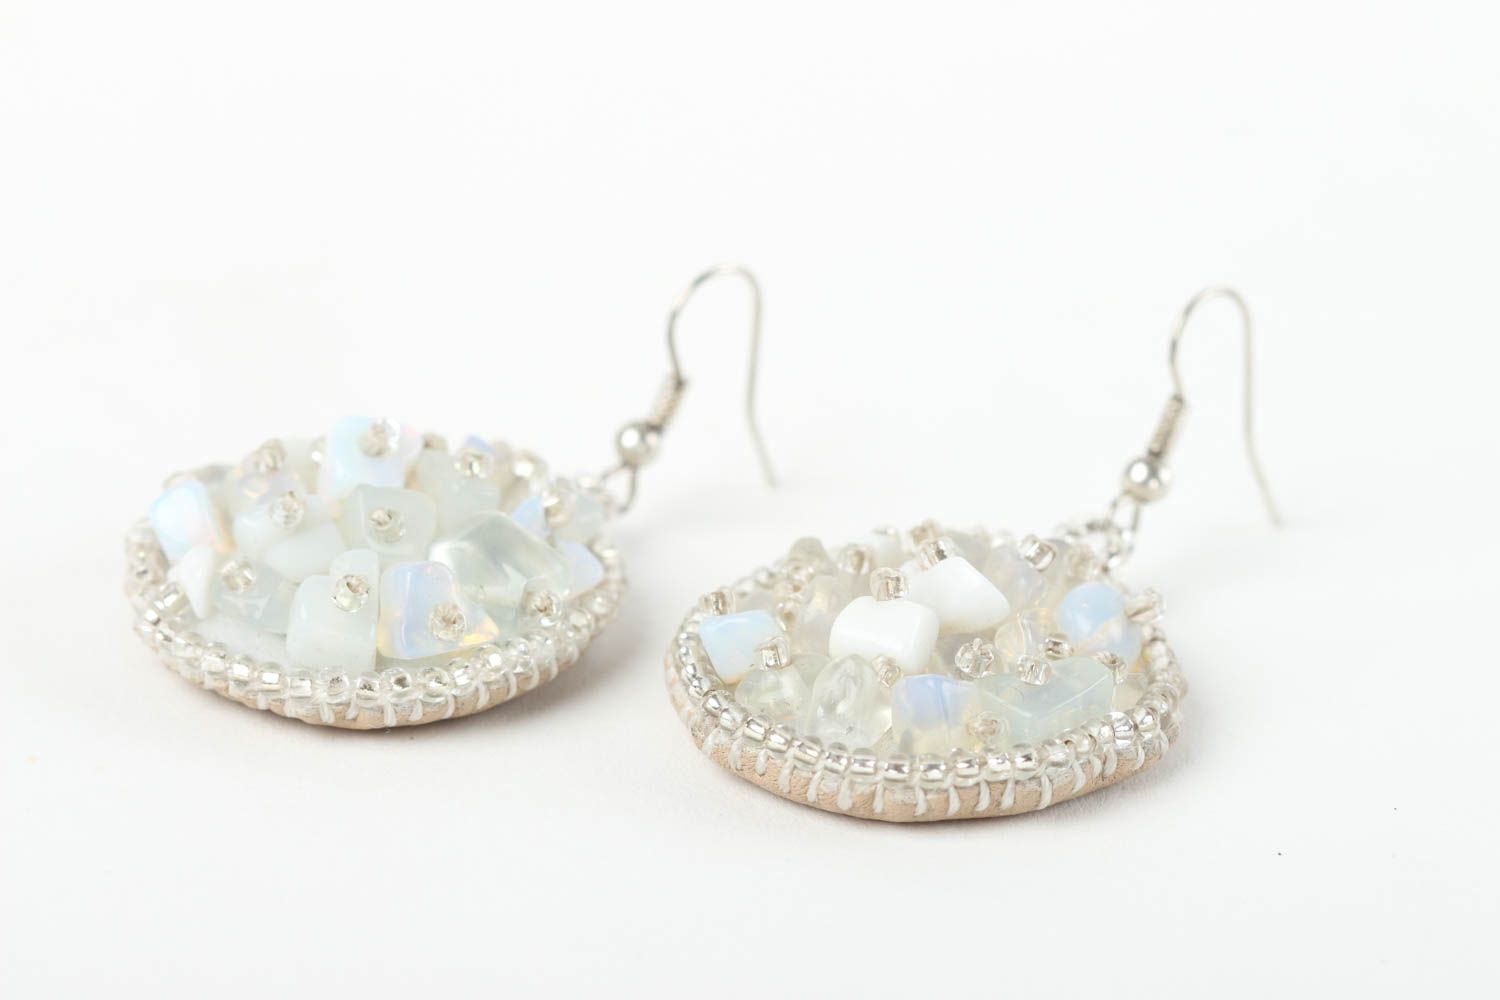 Unusual handmade beaded earrings gemstone earrings cool jewelry designs photo 3